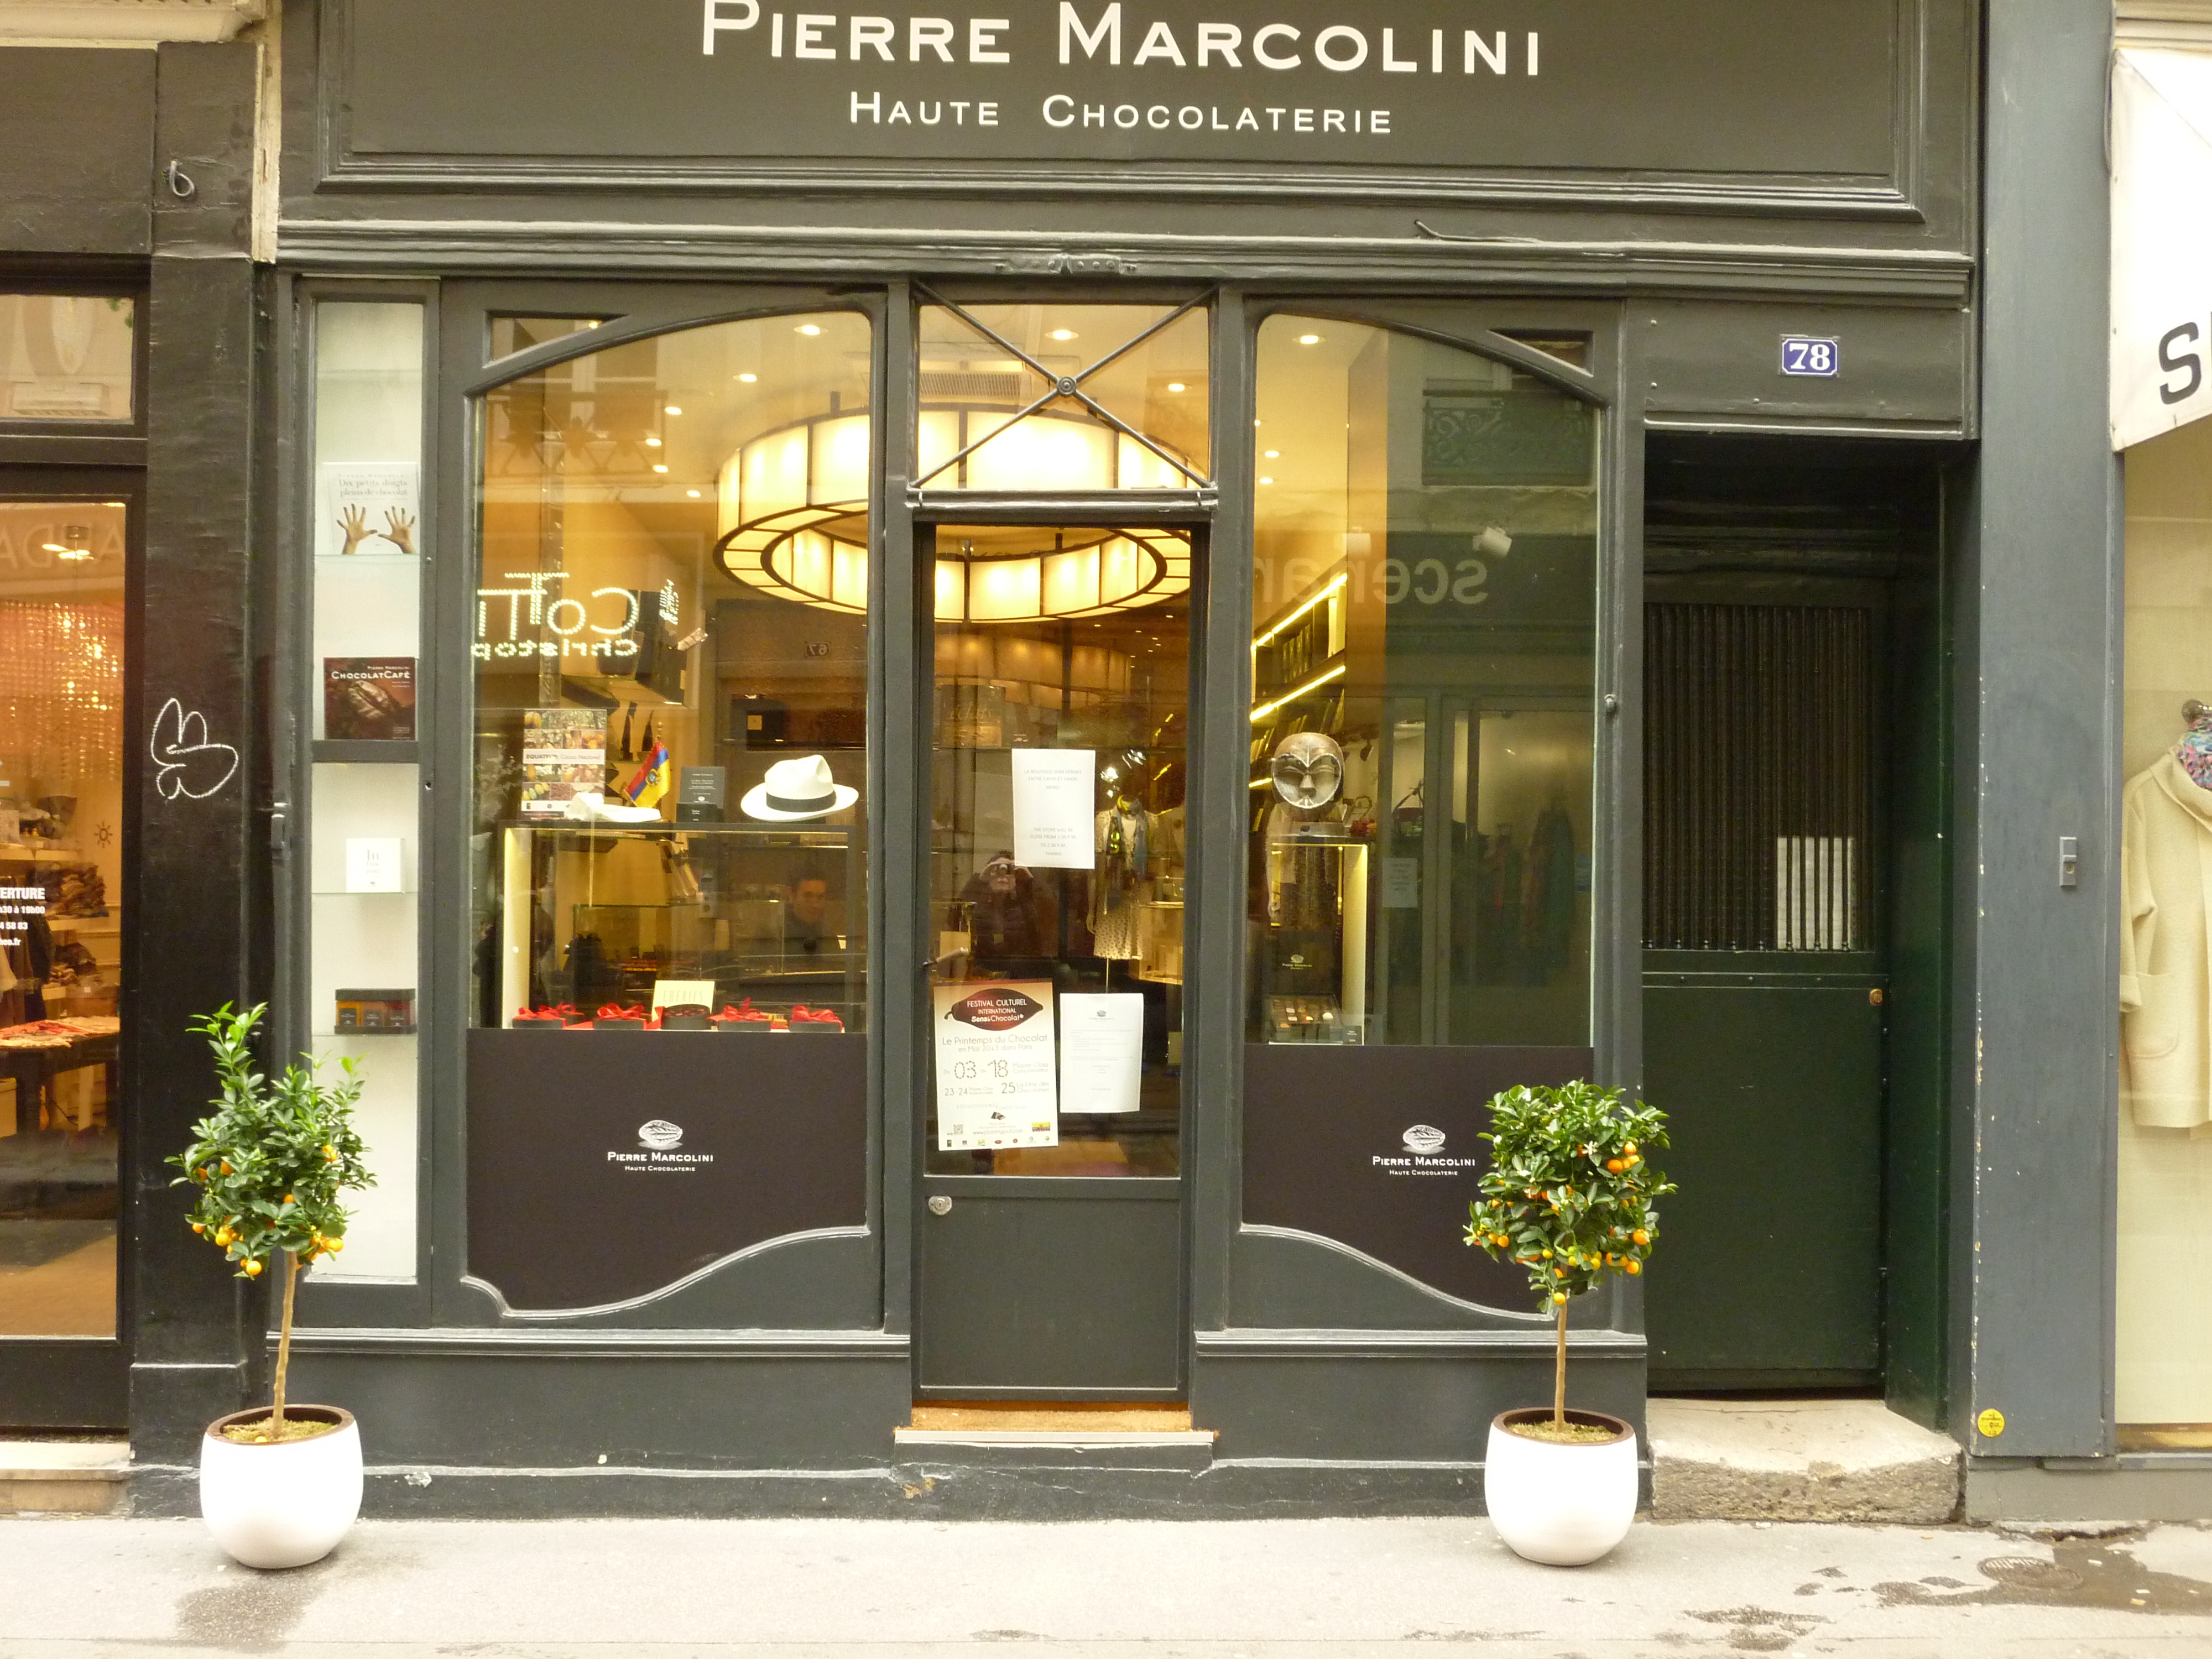 Pierre Marcolini, a ouvert au 78 rue du Bac